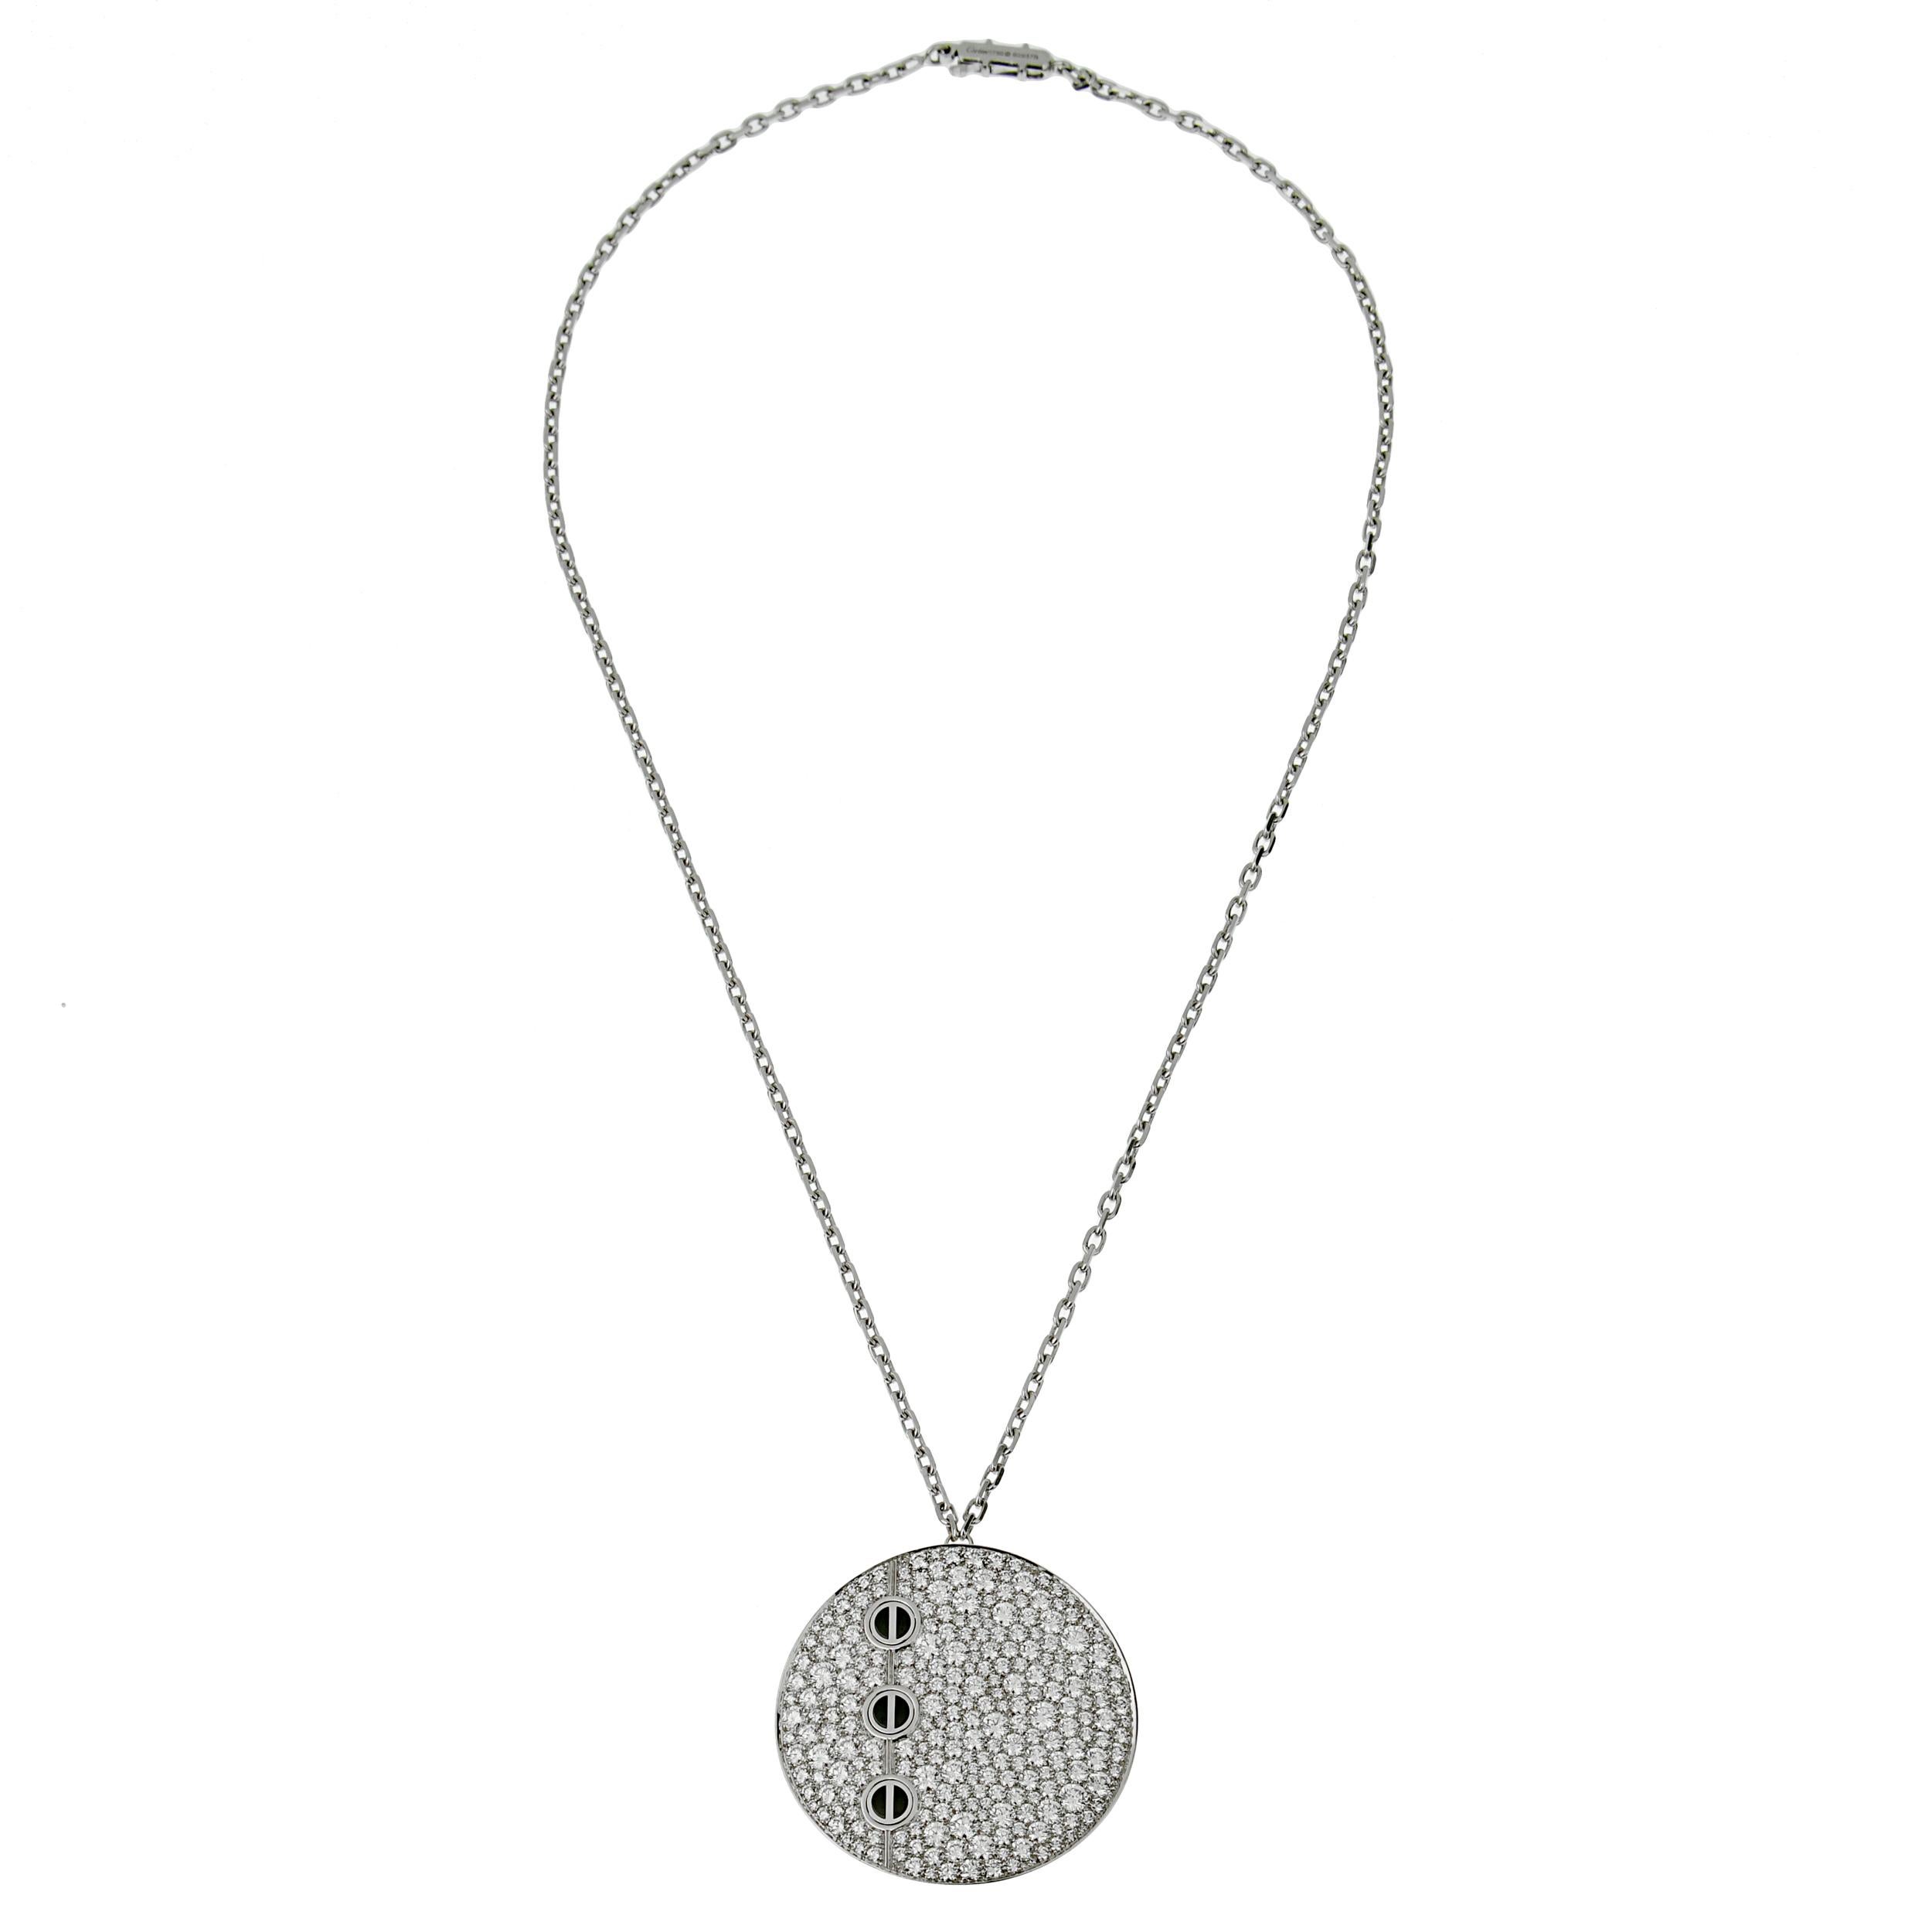 Une magnifique commande spéciale de Cartier, un collier de diamants avec pendentif Love, datant des années 2000, mettant en valeur plus de 5 ct des plus beaux diamants ronds de Cartier, sertis de 3 motifs de vis emblématiques en onyx. Le pendentif